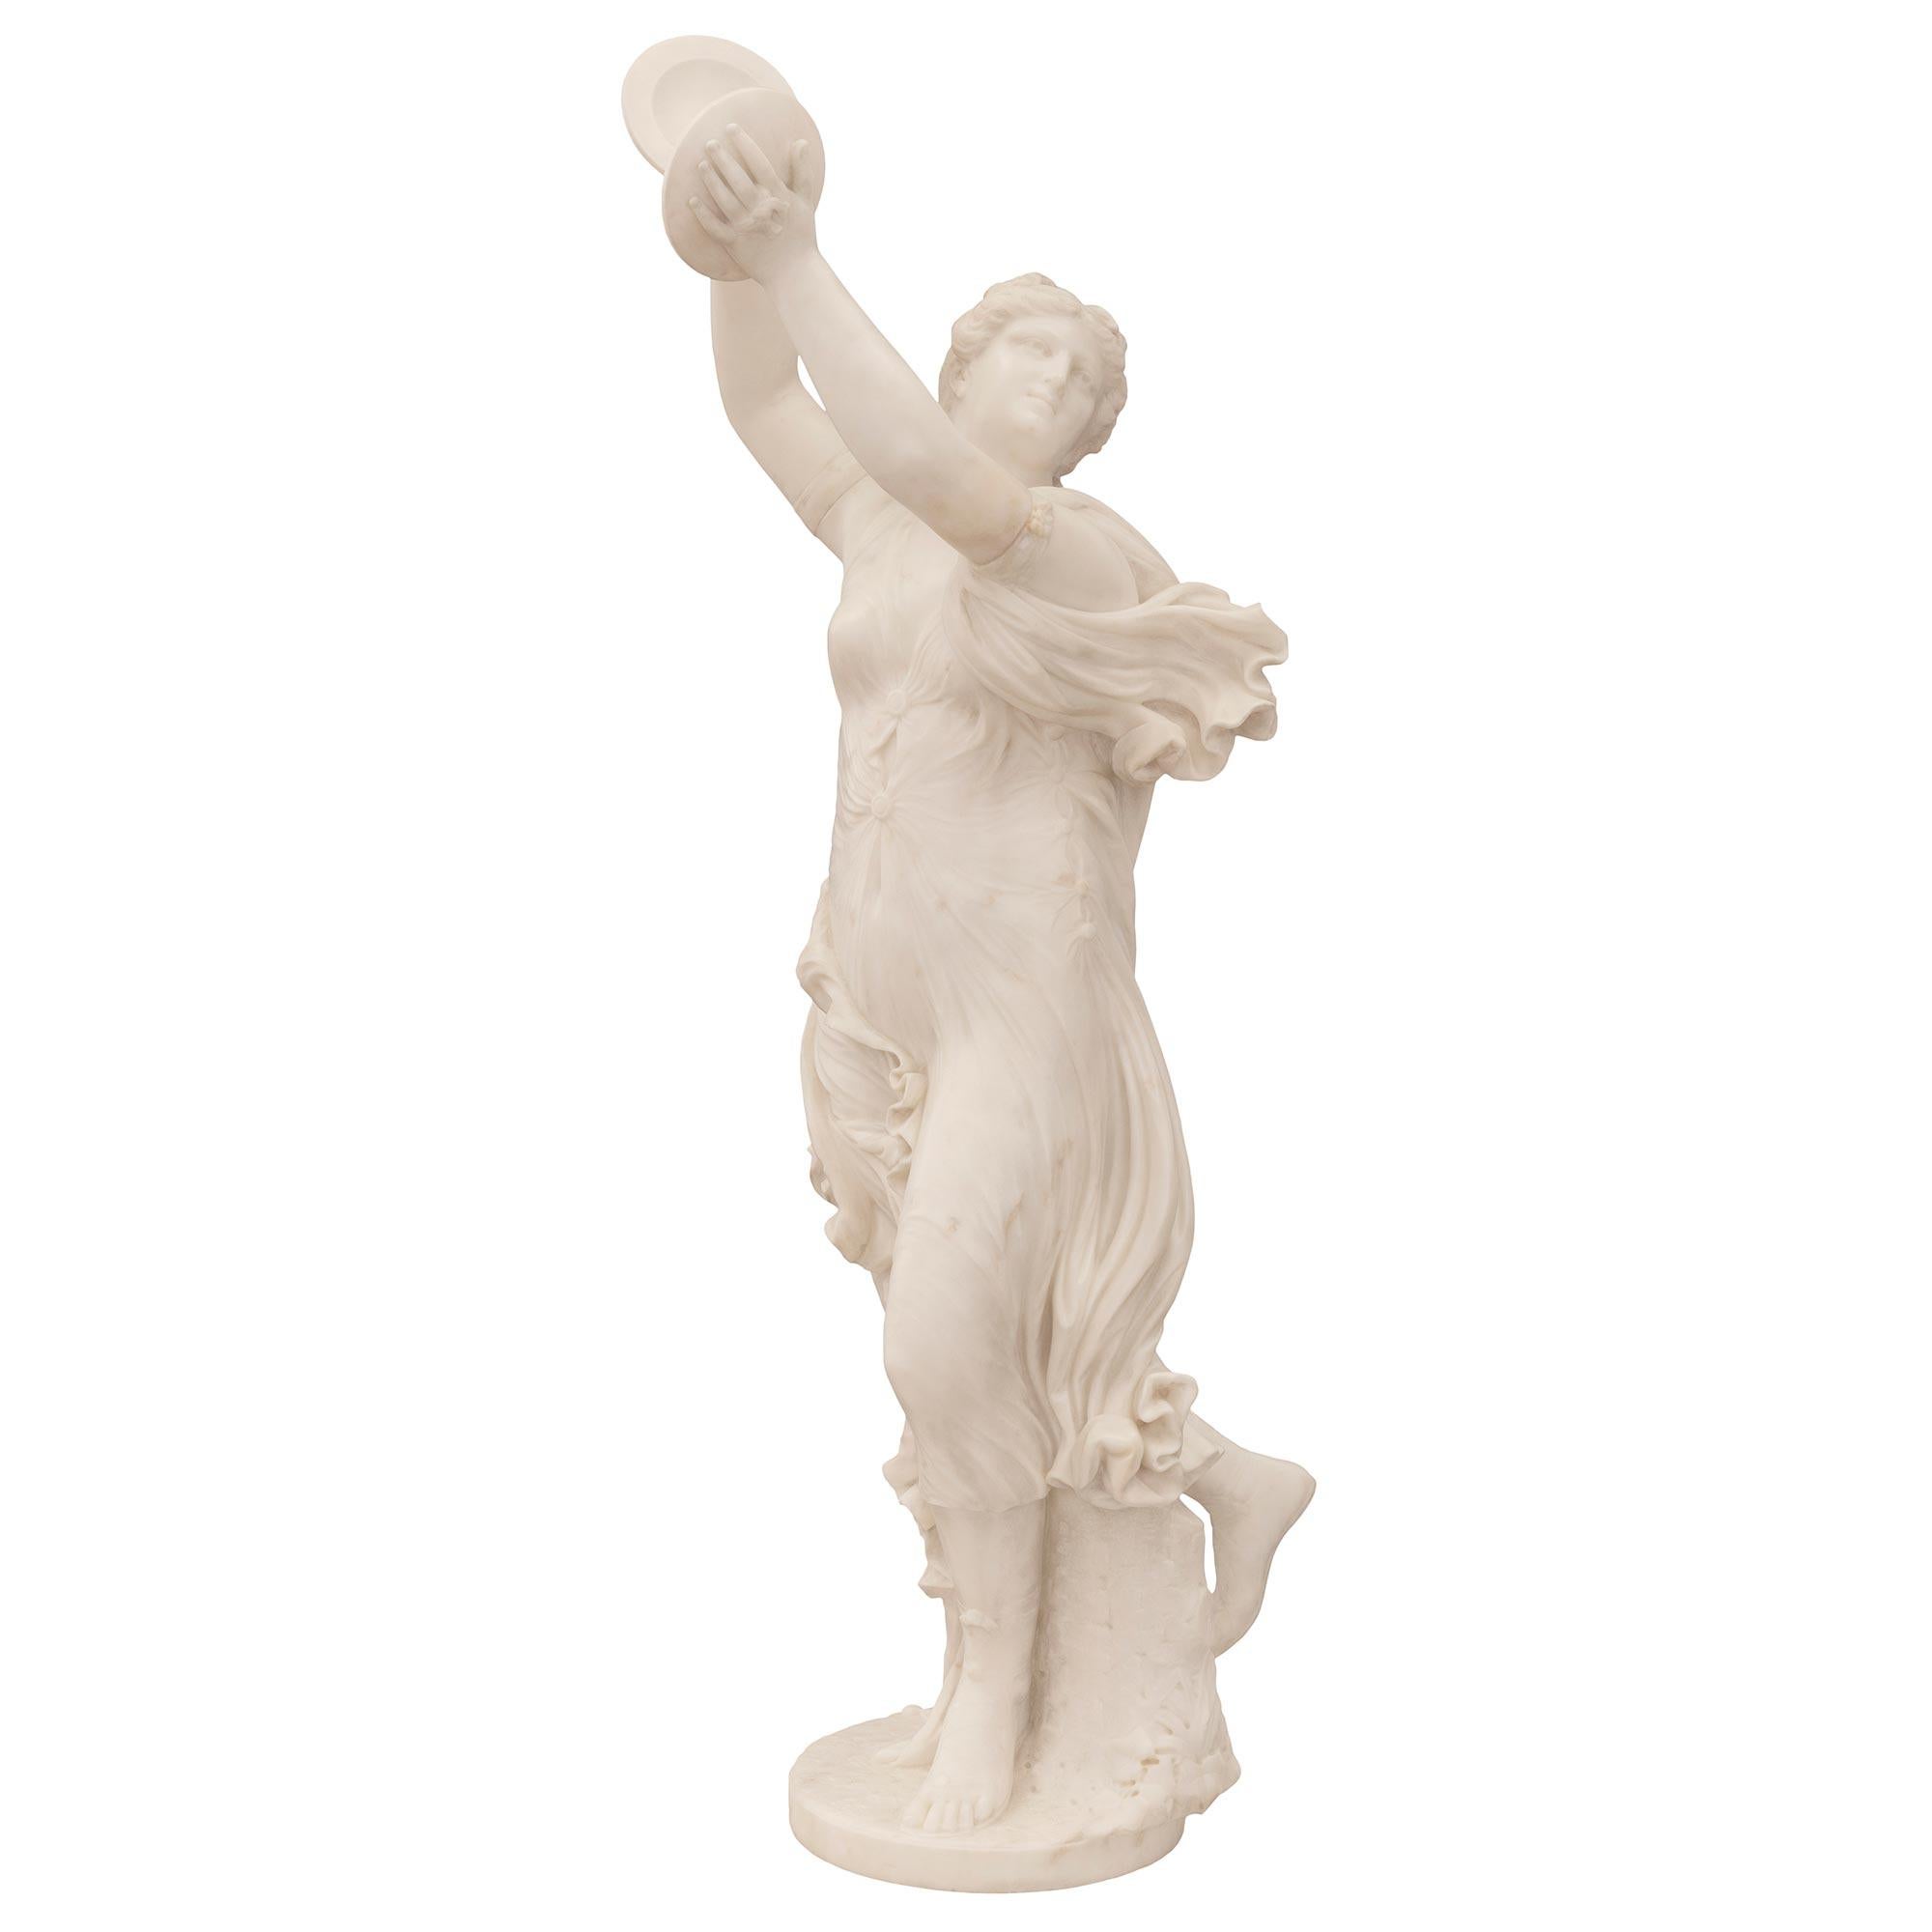 Une belle et très haute qualité de statue française néo-classique du 19ème siècle en marbre blanc de Carrare, signée J. Clésinger. La statue est surélevée par une base circulaire avec un motif au sol merveilleusement exécuté et une souche d'arbre à